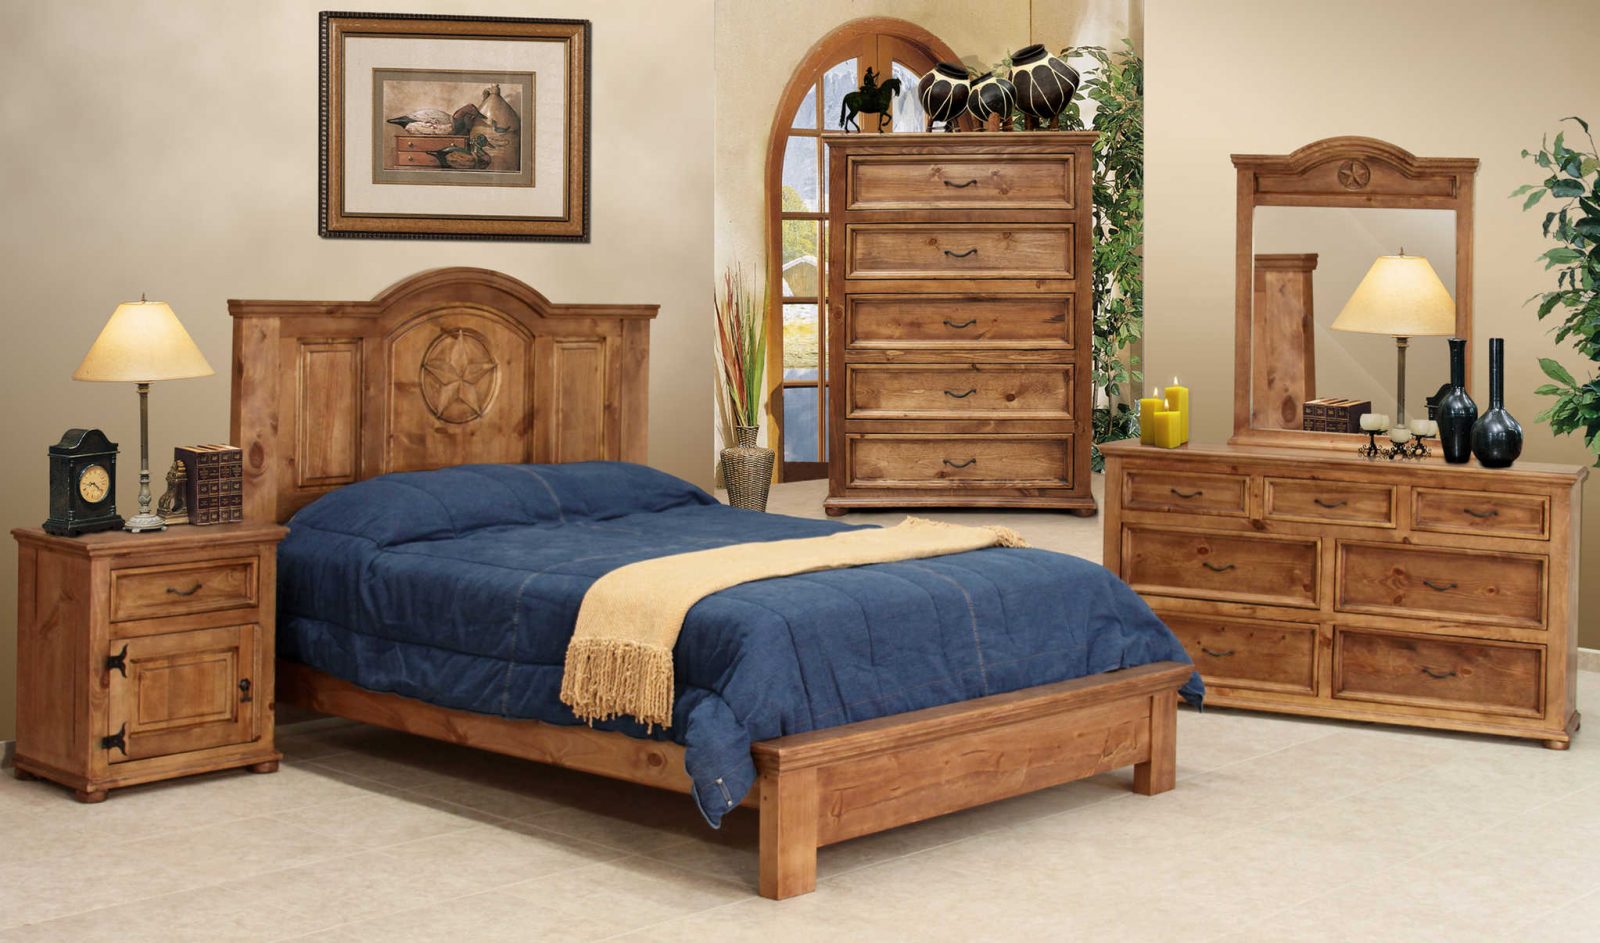 Rustic King Bedroom Furniture Sets